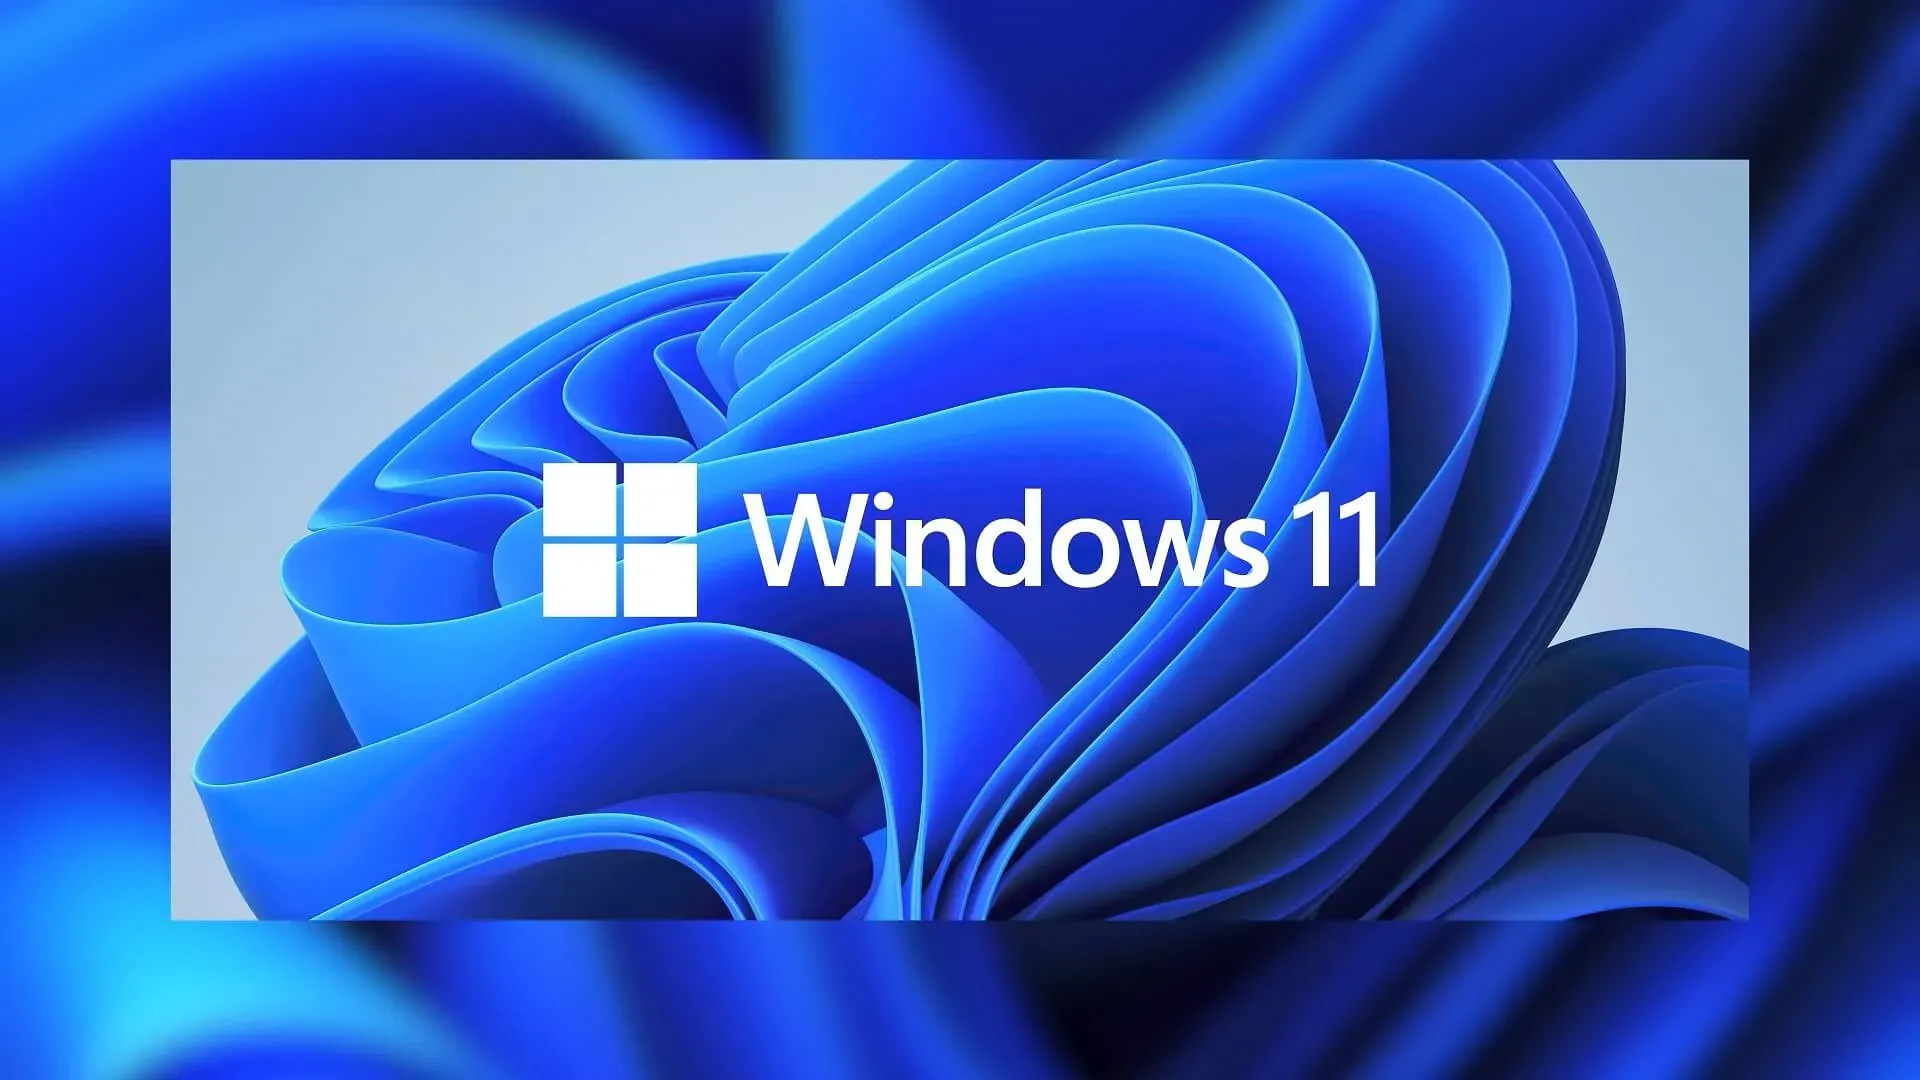 Windows 11 22H2 ISO イメージをダウンロードする